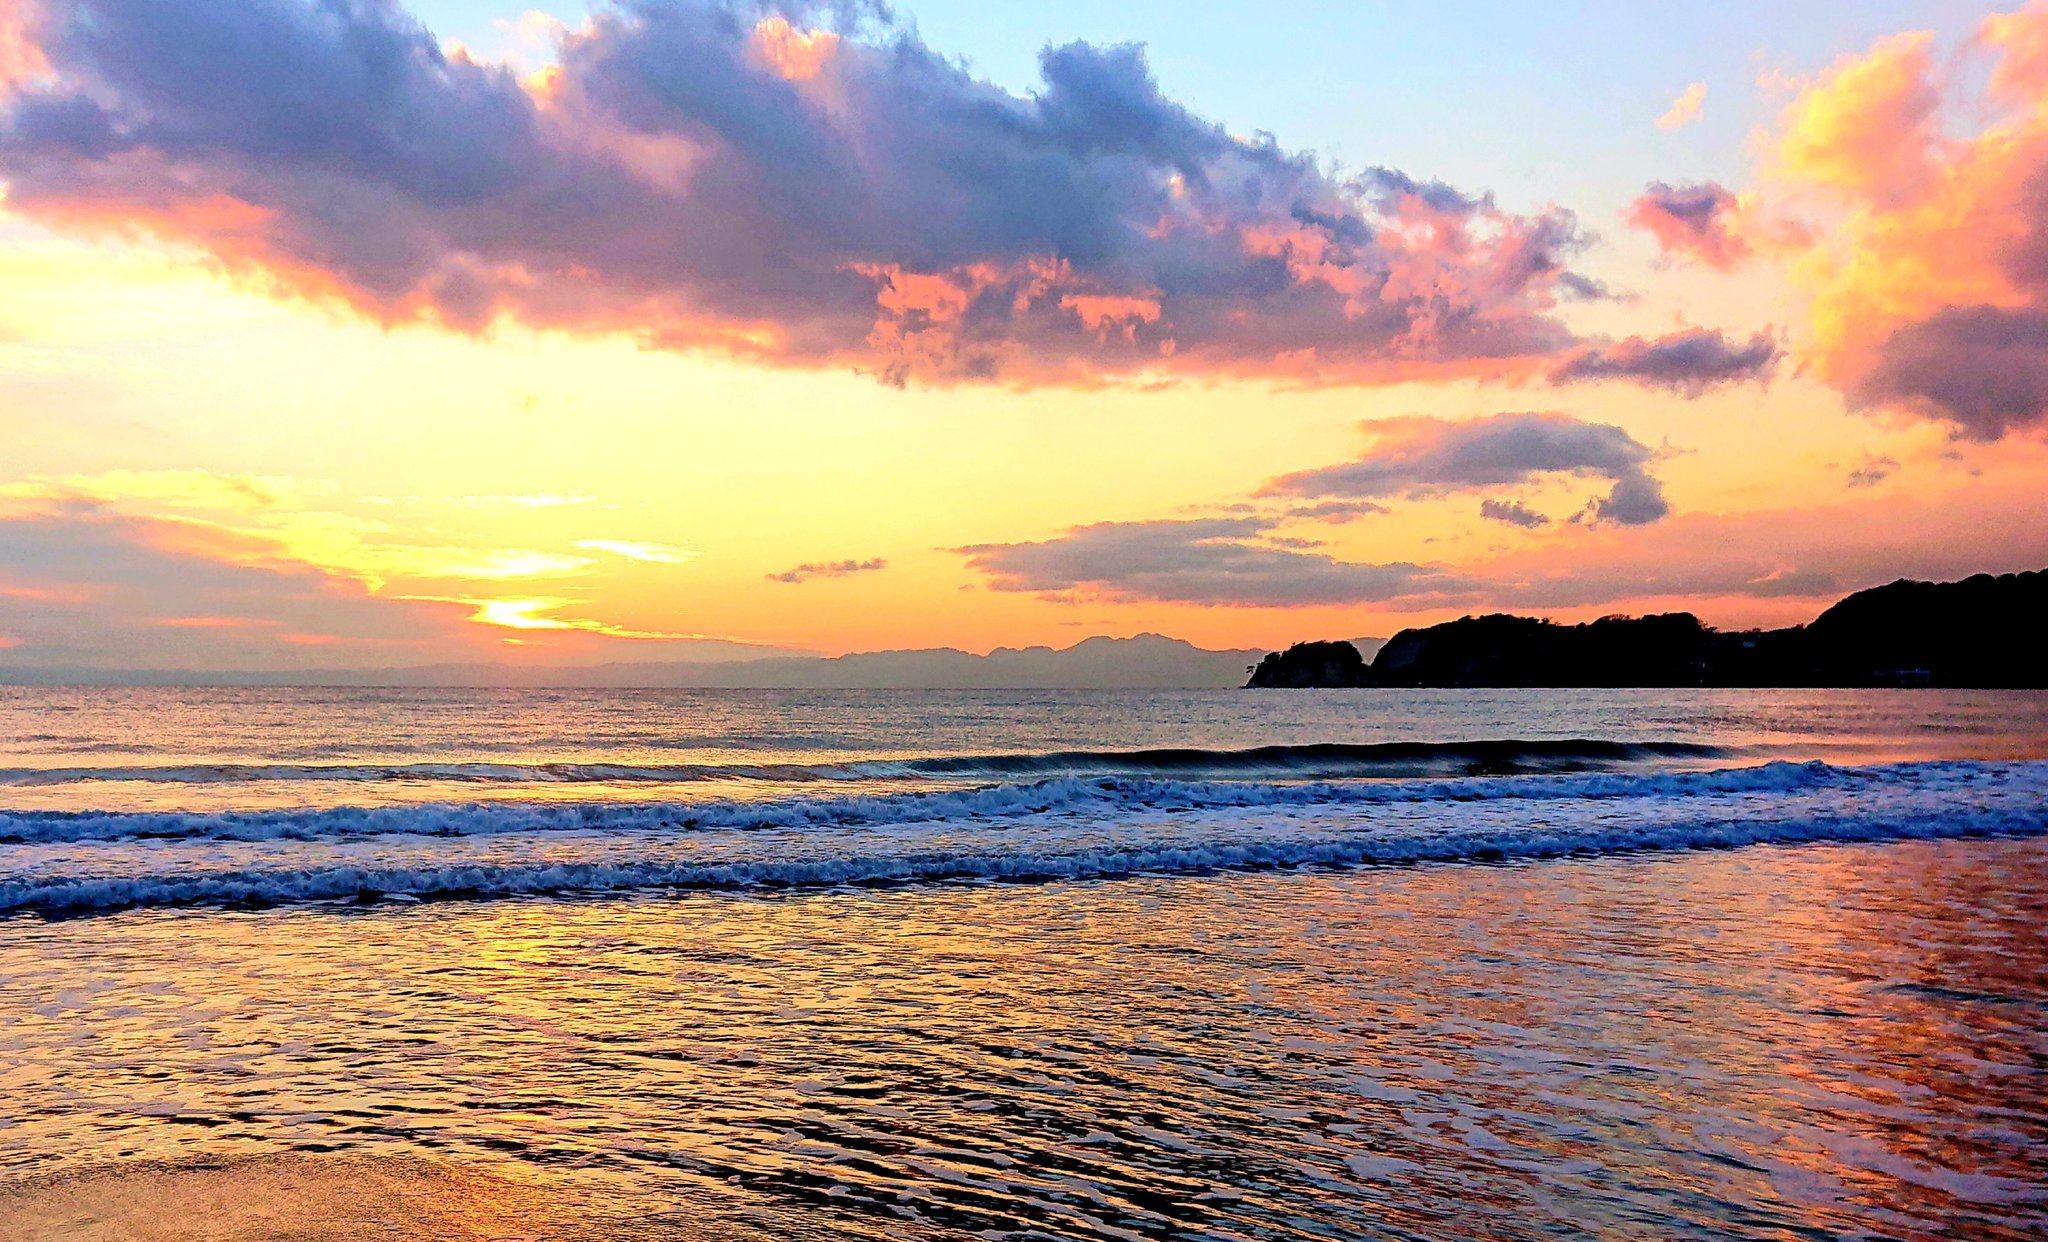 日々 Kamakura 今日は穏やかな１日でした 雲が迫ってきていましたが 綺麗な夕日と夕焼けでした オレンジピンクの海 夕日 夕焼け 鎌倉の海 鎌倉の生活 材木座海岸 オレンジピンク 穏やかな海 T Co K0hvhlytxy Twitter